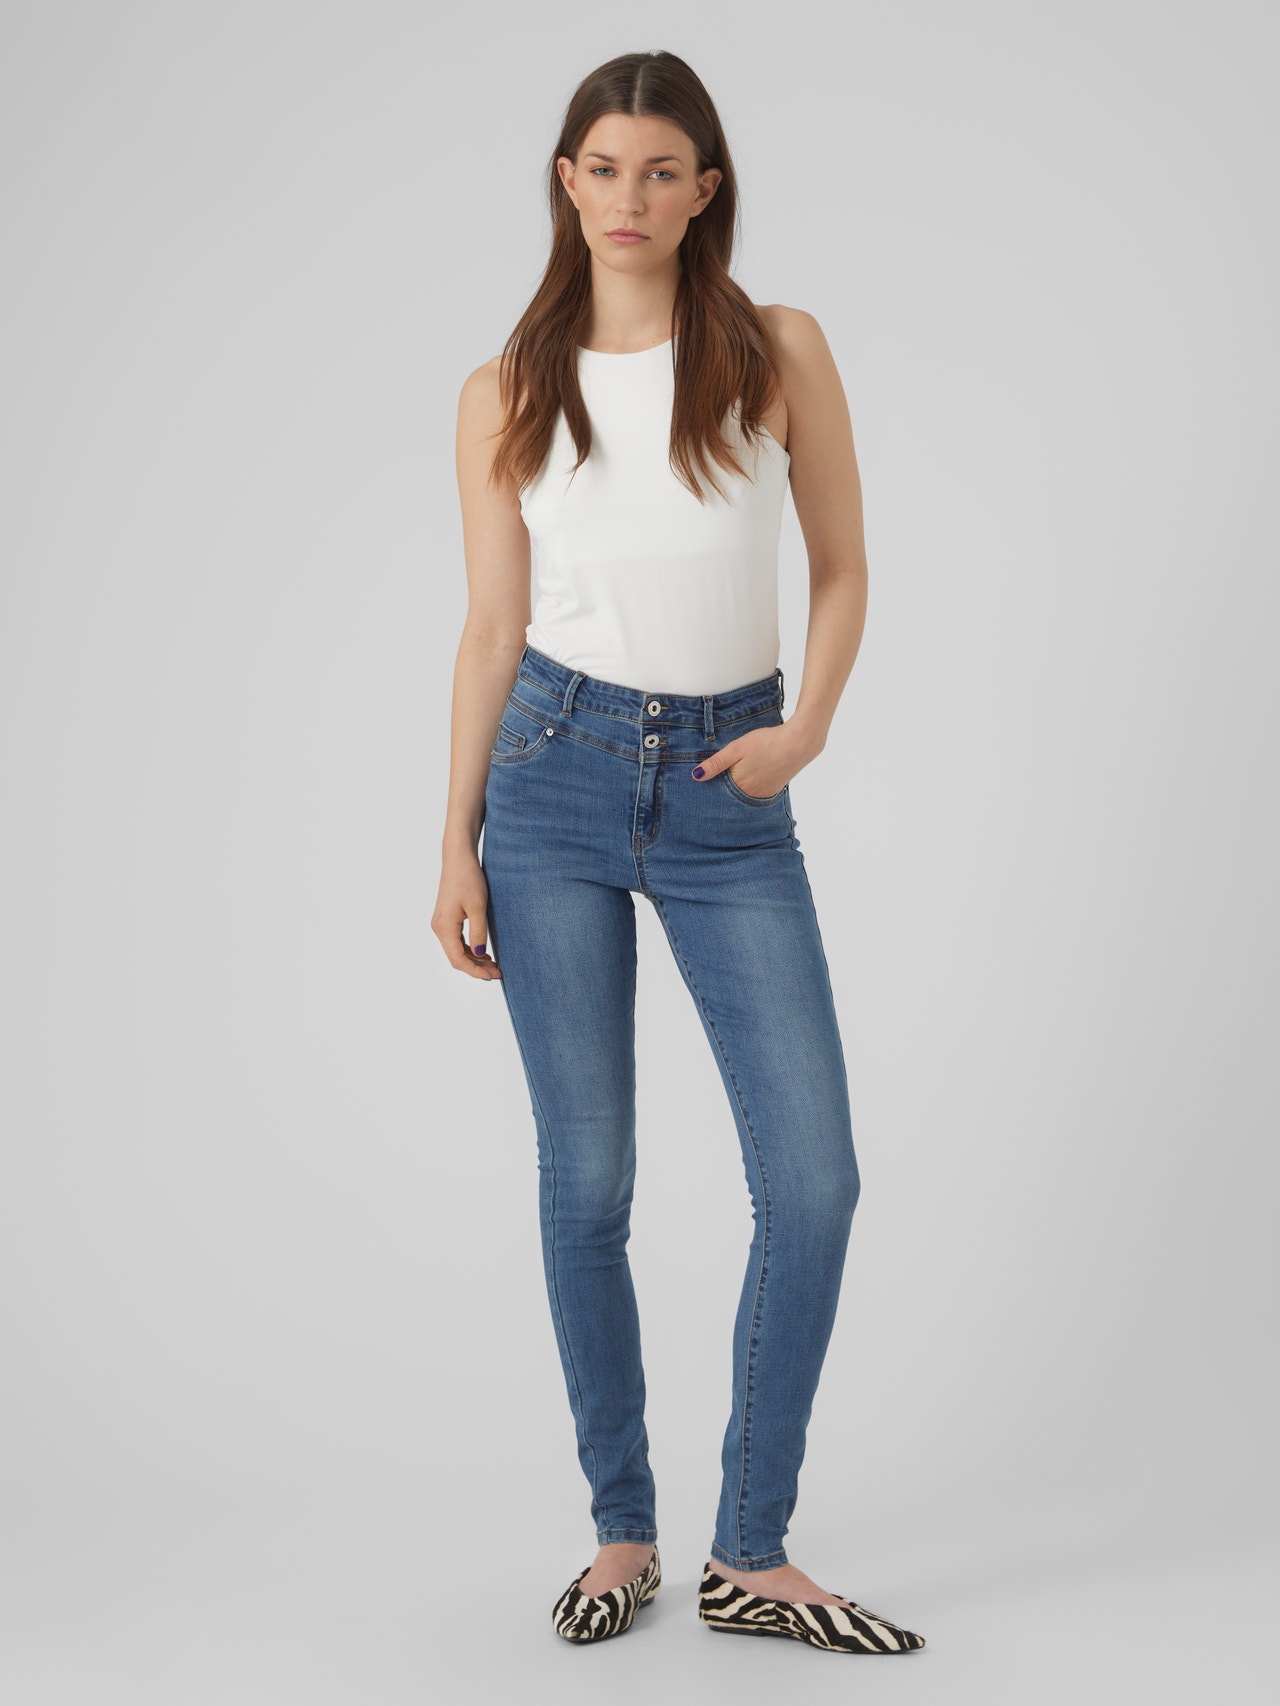 Vero Moda VMSOPHIA Skinny Fit Jeans -Medium Blue Denim - 10303211